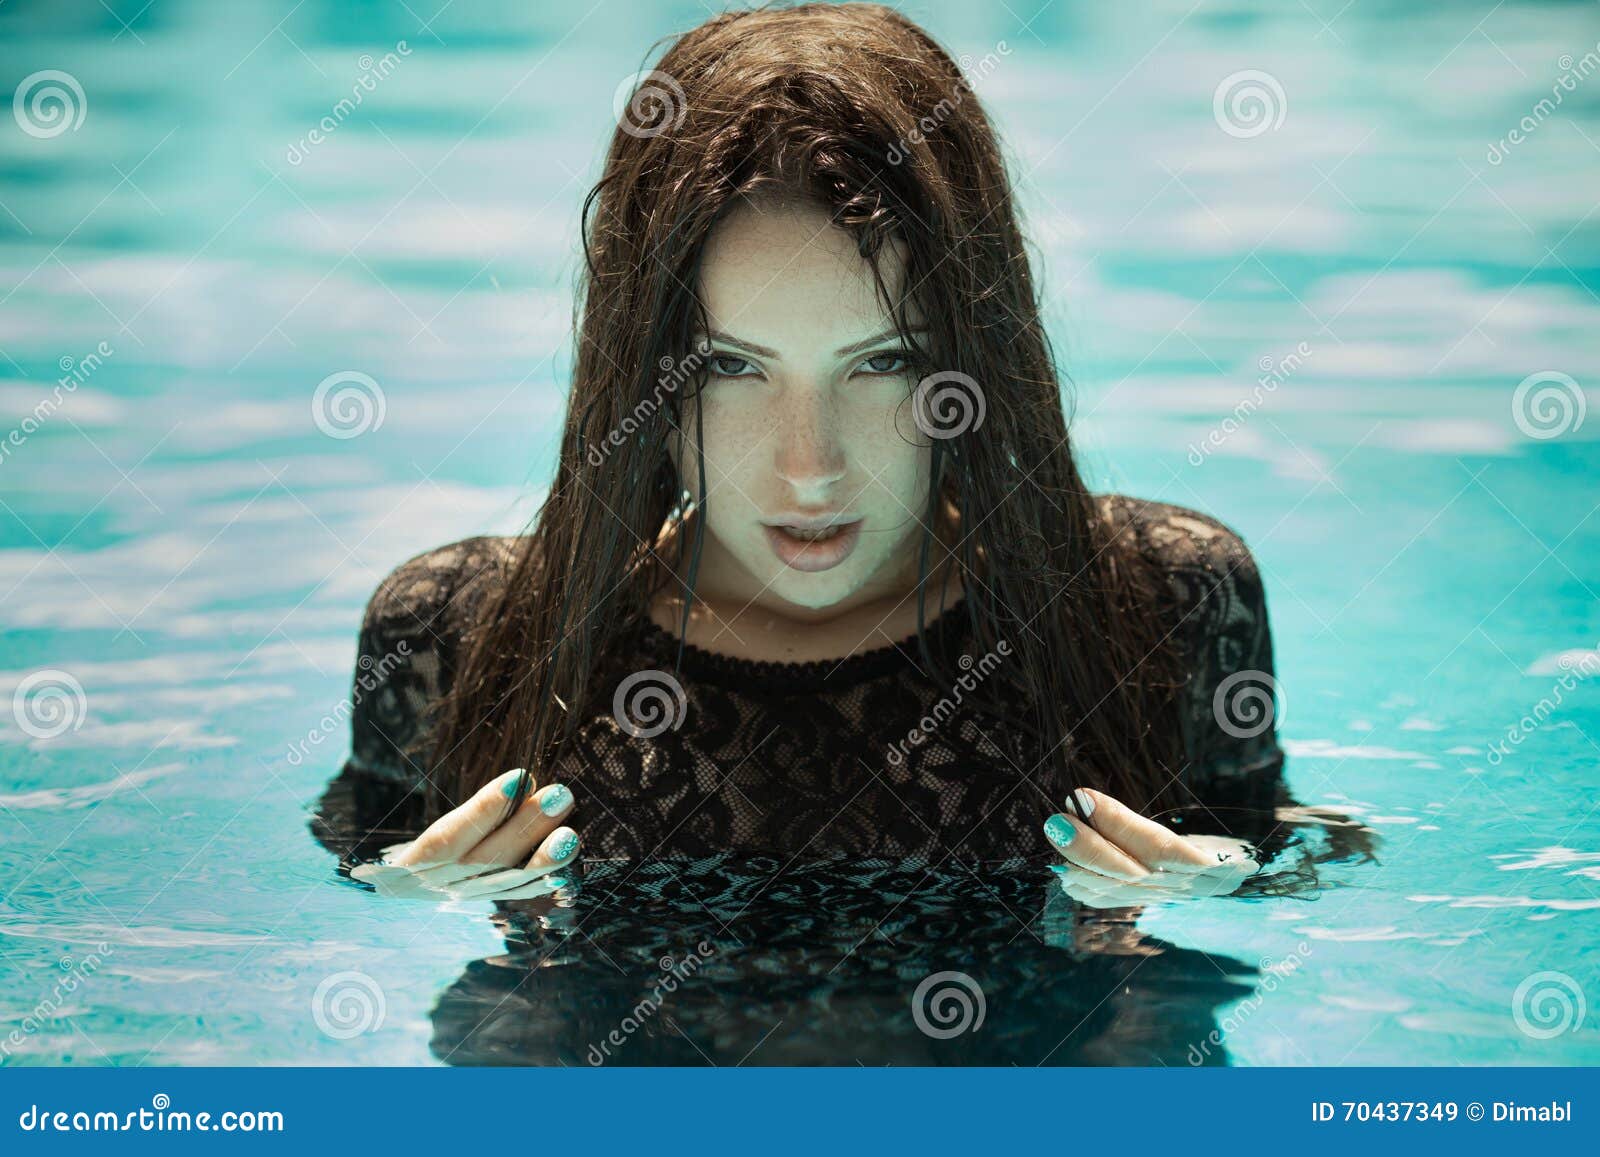 Premium AI Image | Water goddess watercolor 115